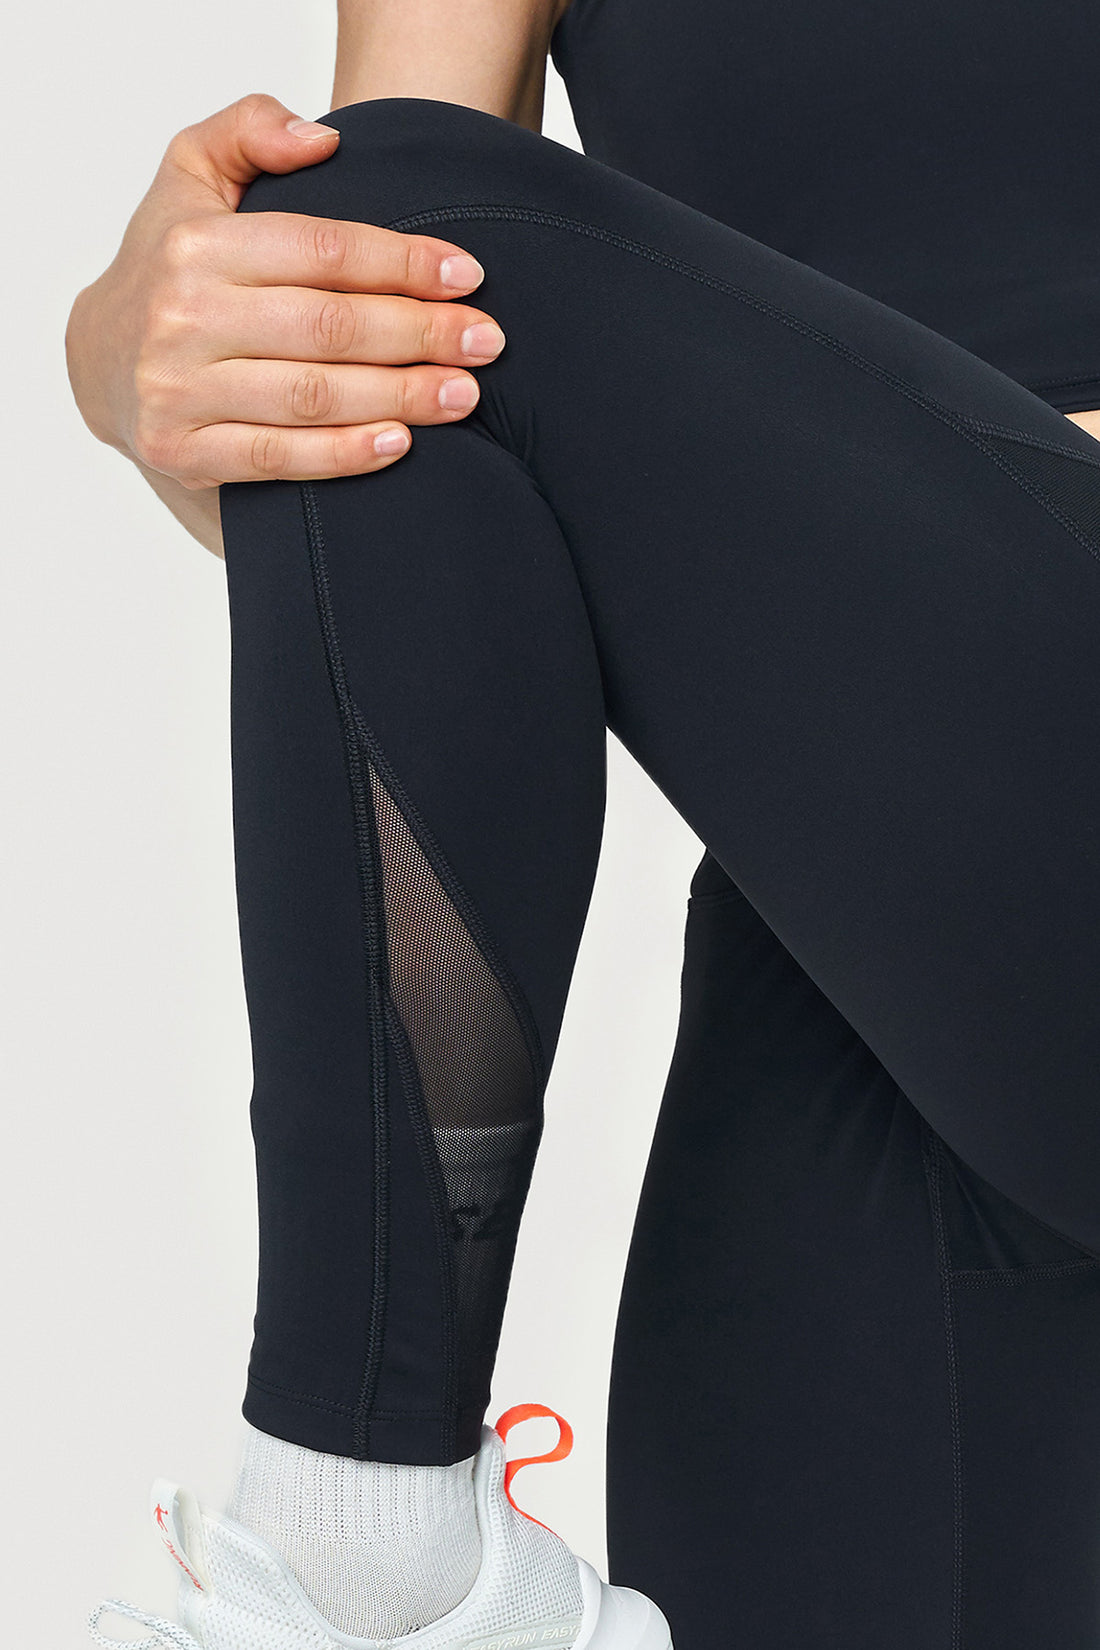 High Waist Mesh Panel Pocket and Ankle Detail Full Length Legging